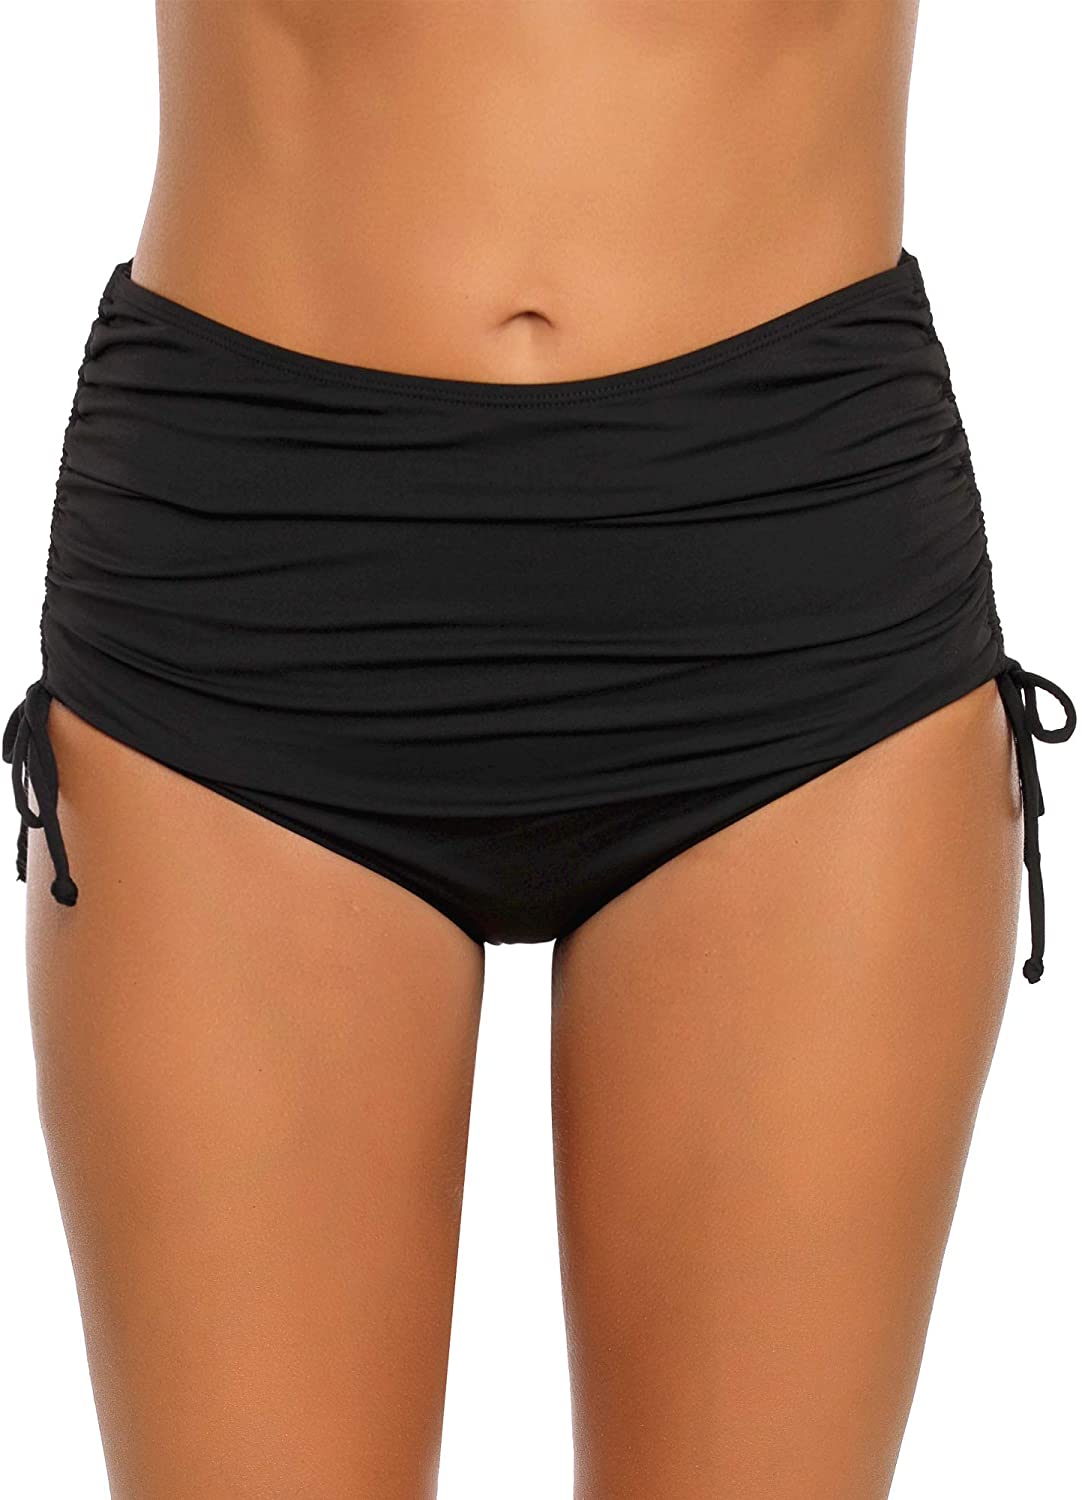 Luyeess Womens High Waisted Swim Skirt Ruched Bikini Tankini Swim Bottom with Brief